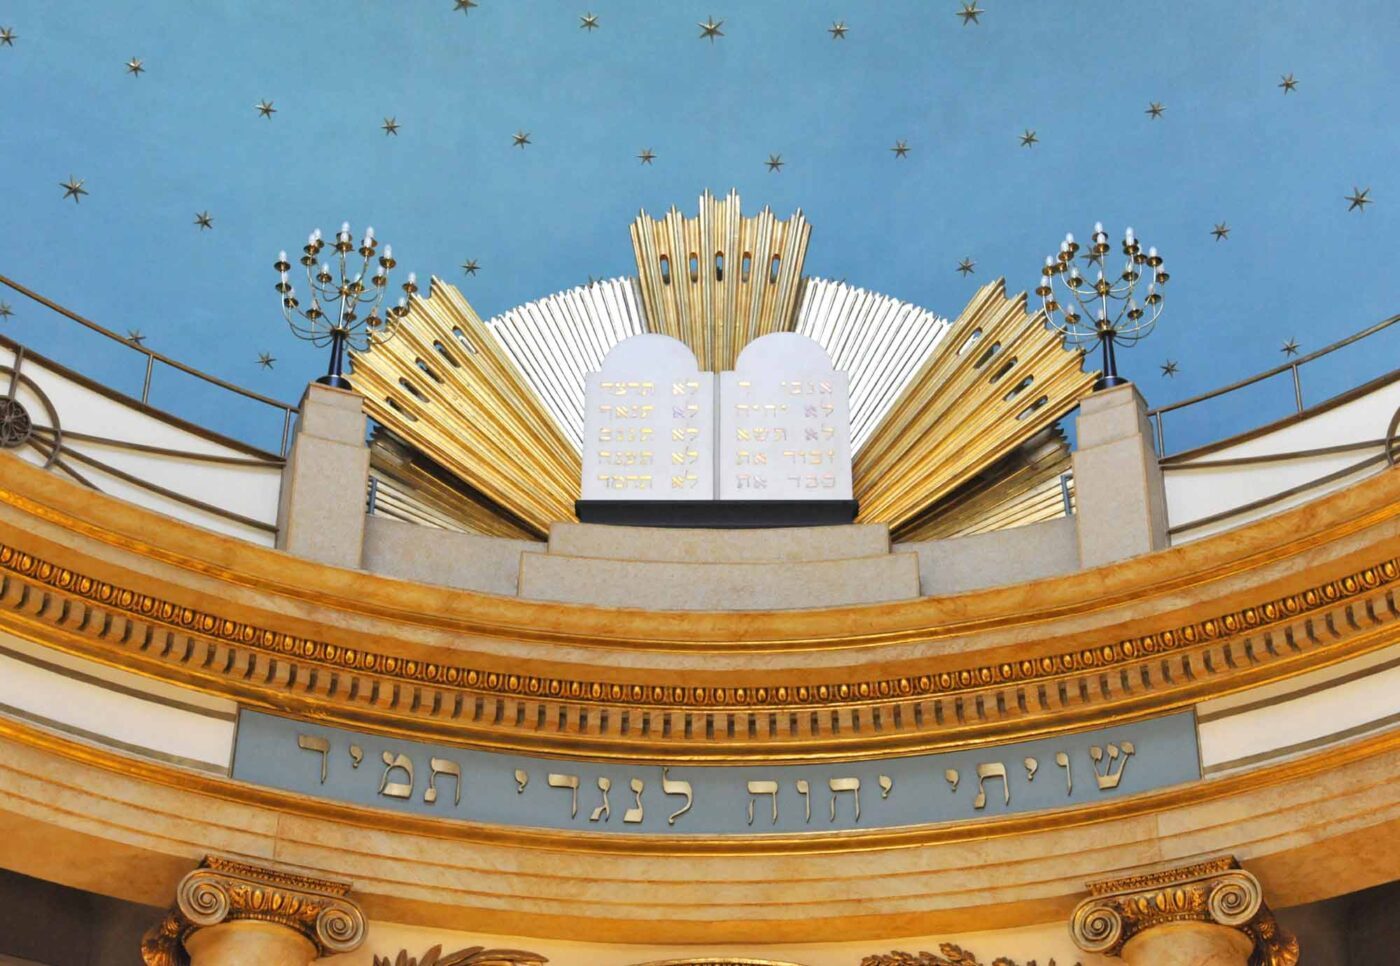 Das Judentum sieht sich derzeit mit Antisemitismus konfrontiert. Im Bild die Synagoge in Wien. (Foto: epd/Uschmann)